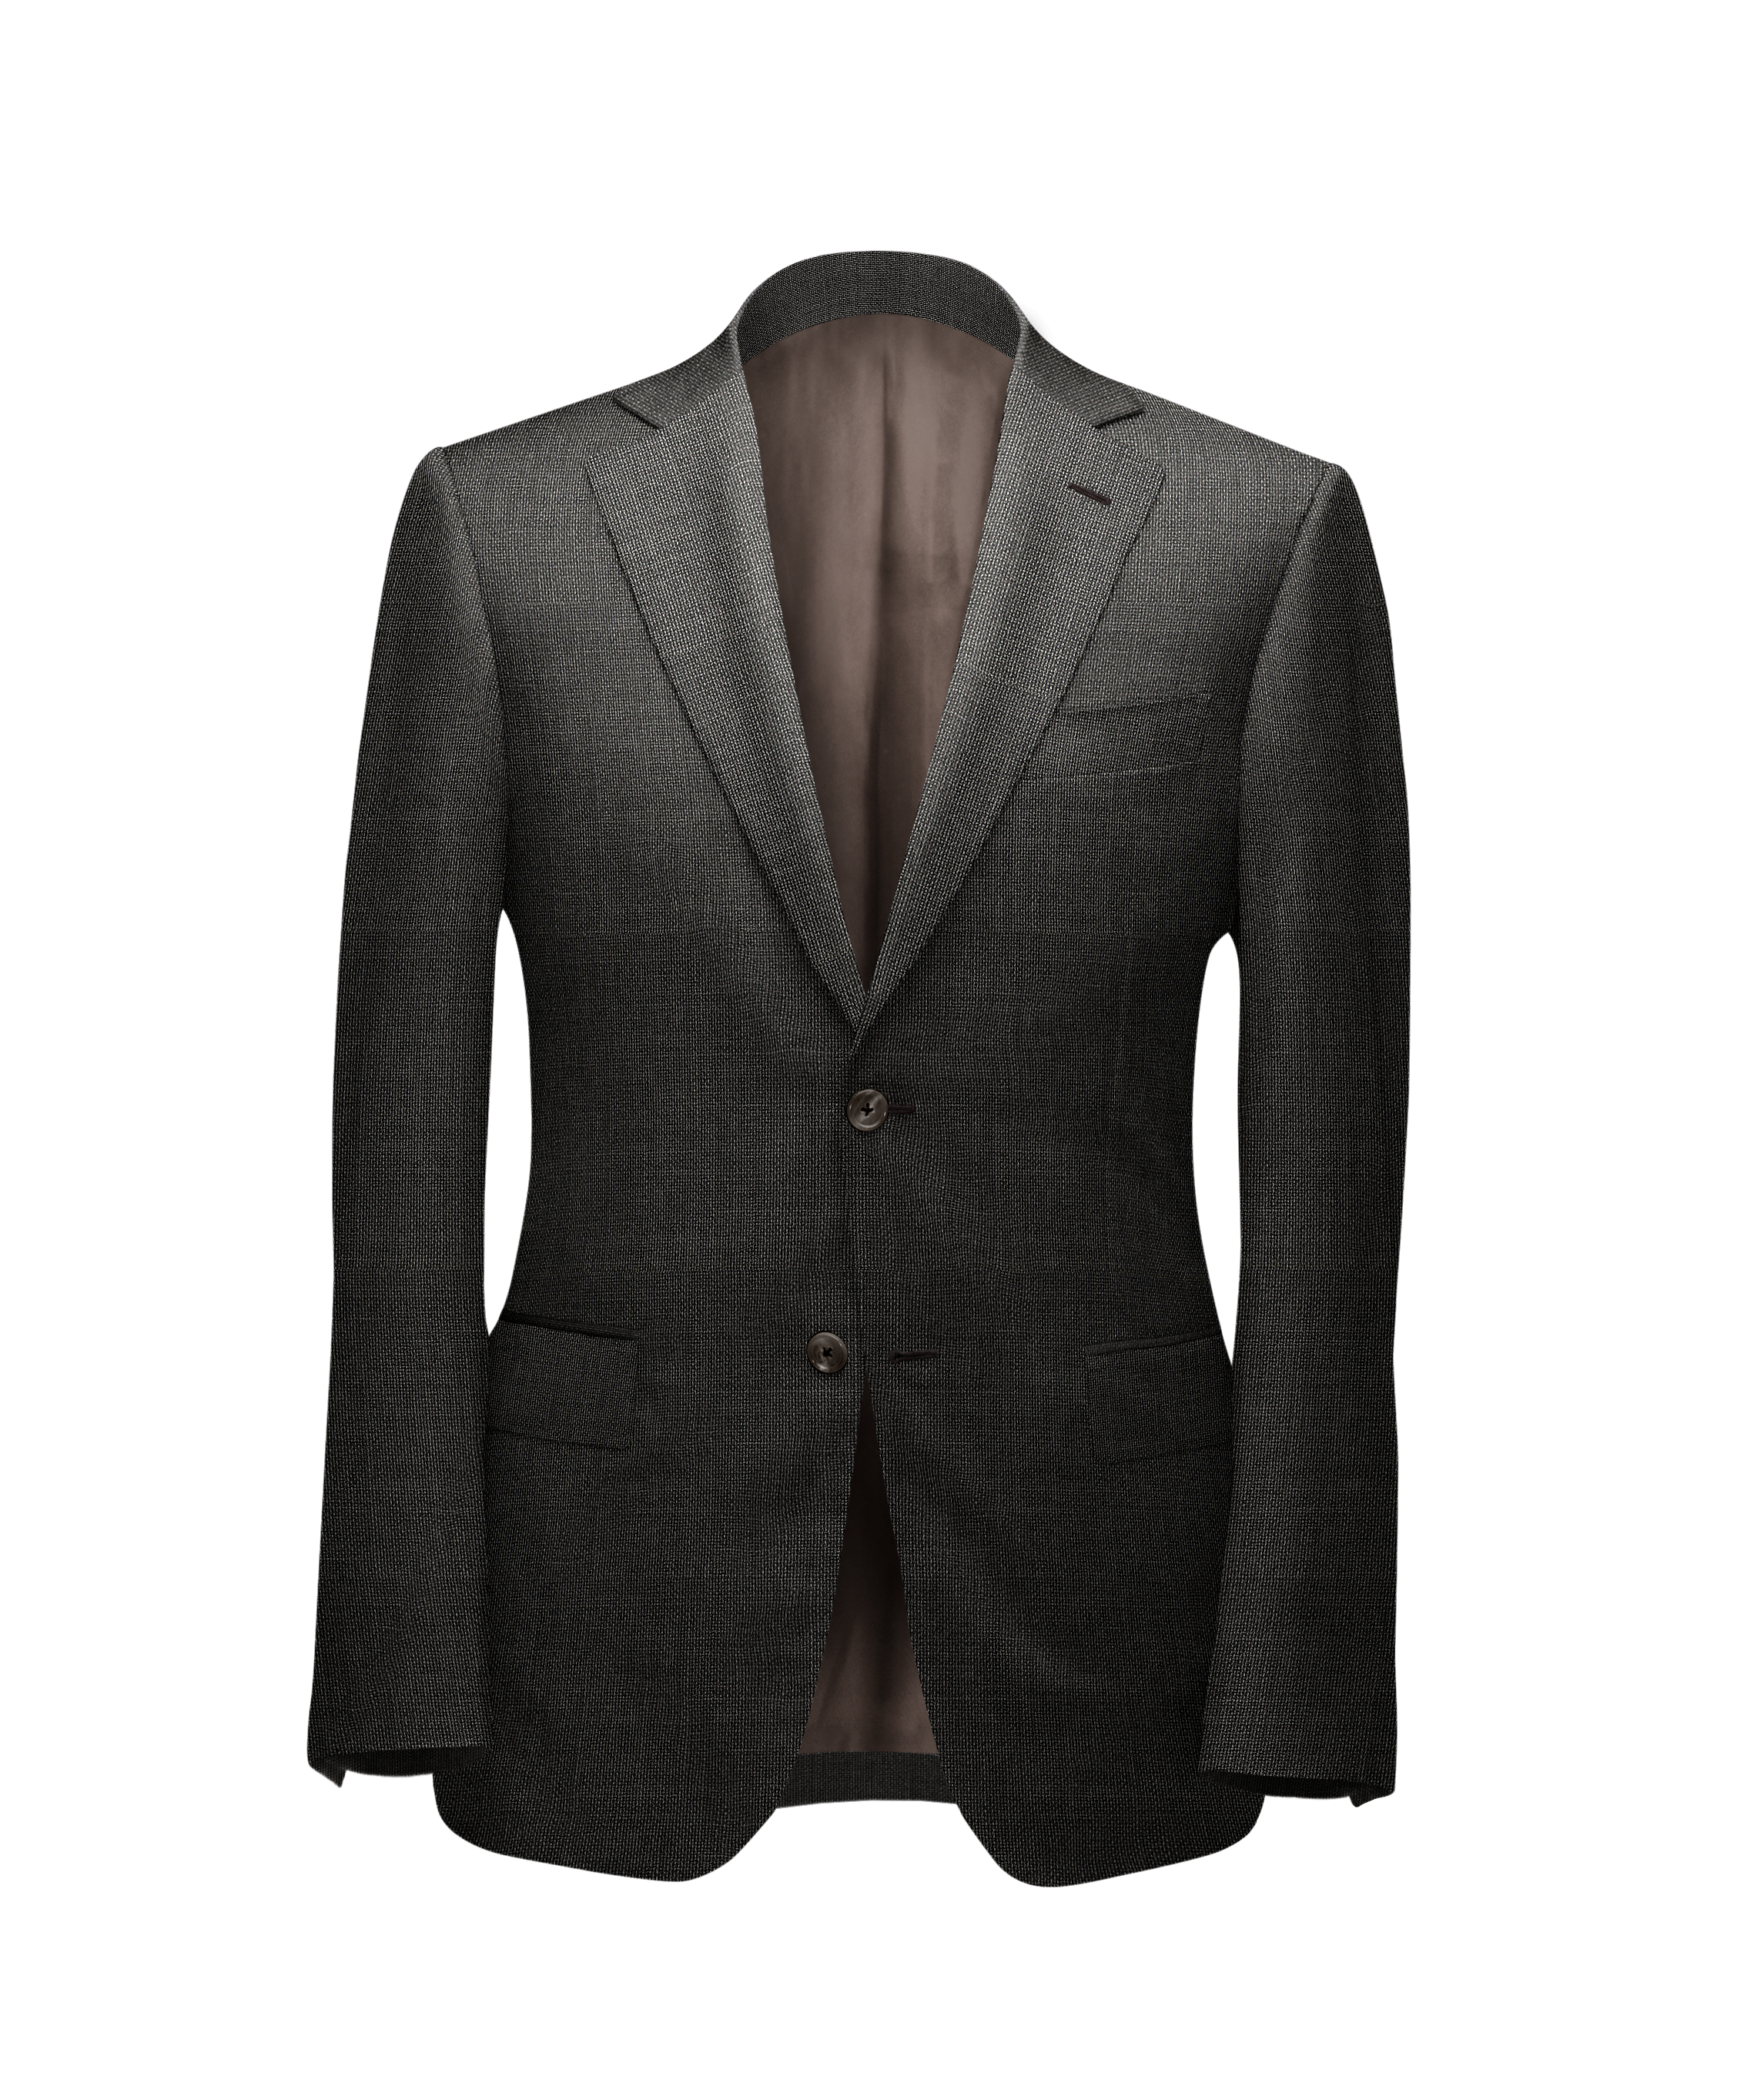 The Opulent 2 Piece Suit